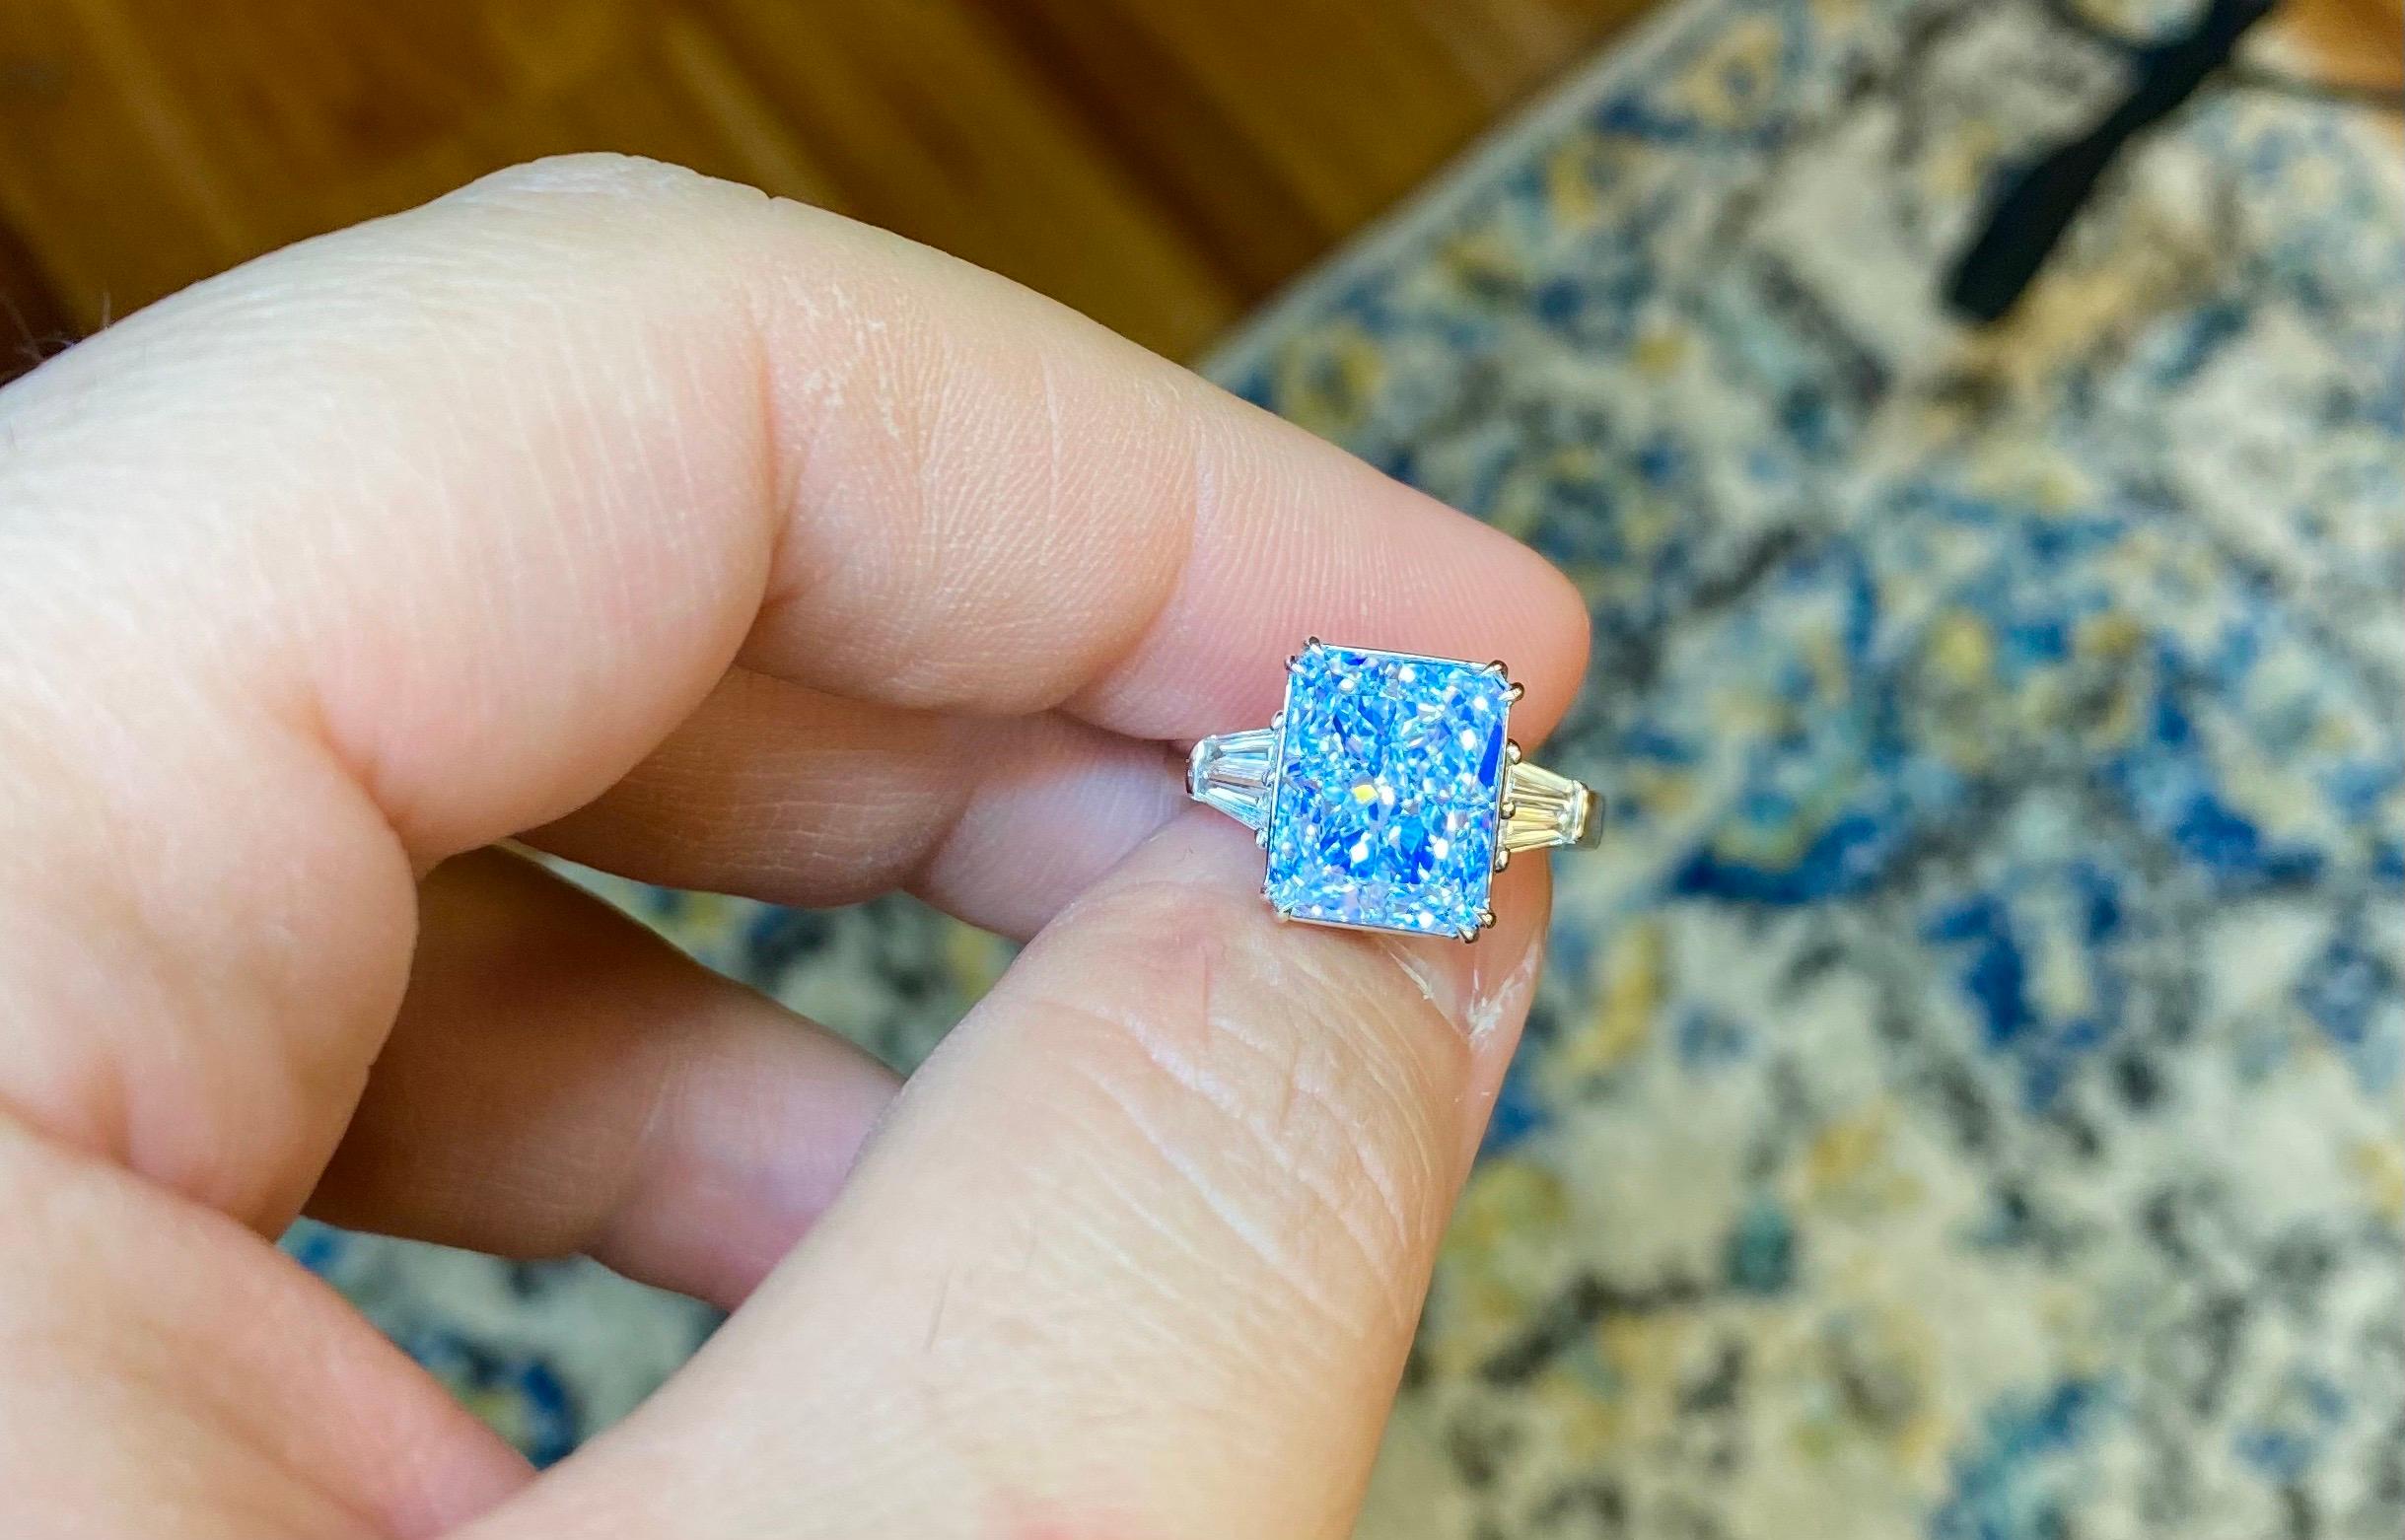 Aus dem Museumstresor von Emilio Jewelry New York,
Einer der seltensten und einzigen Diamanten dieser Größe und Farbe. Bitte erkundigen Sie sich nach Einzelheiten. 